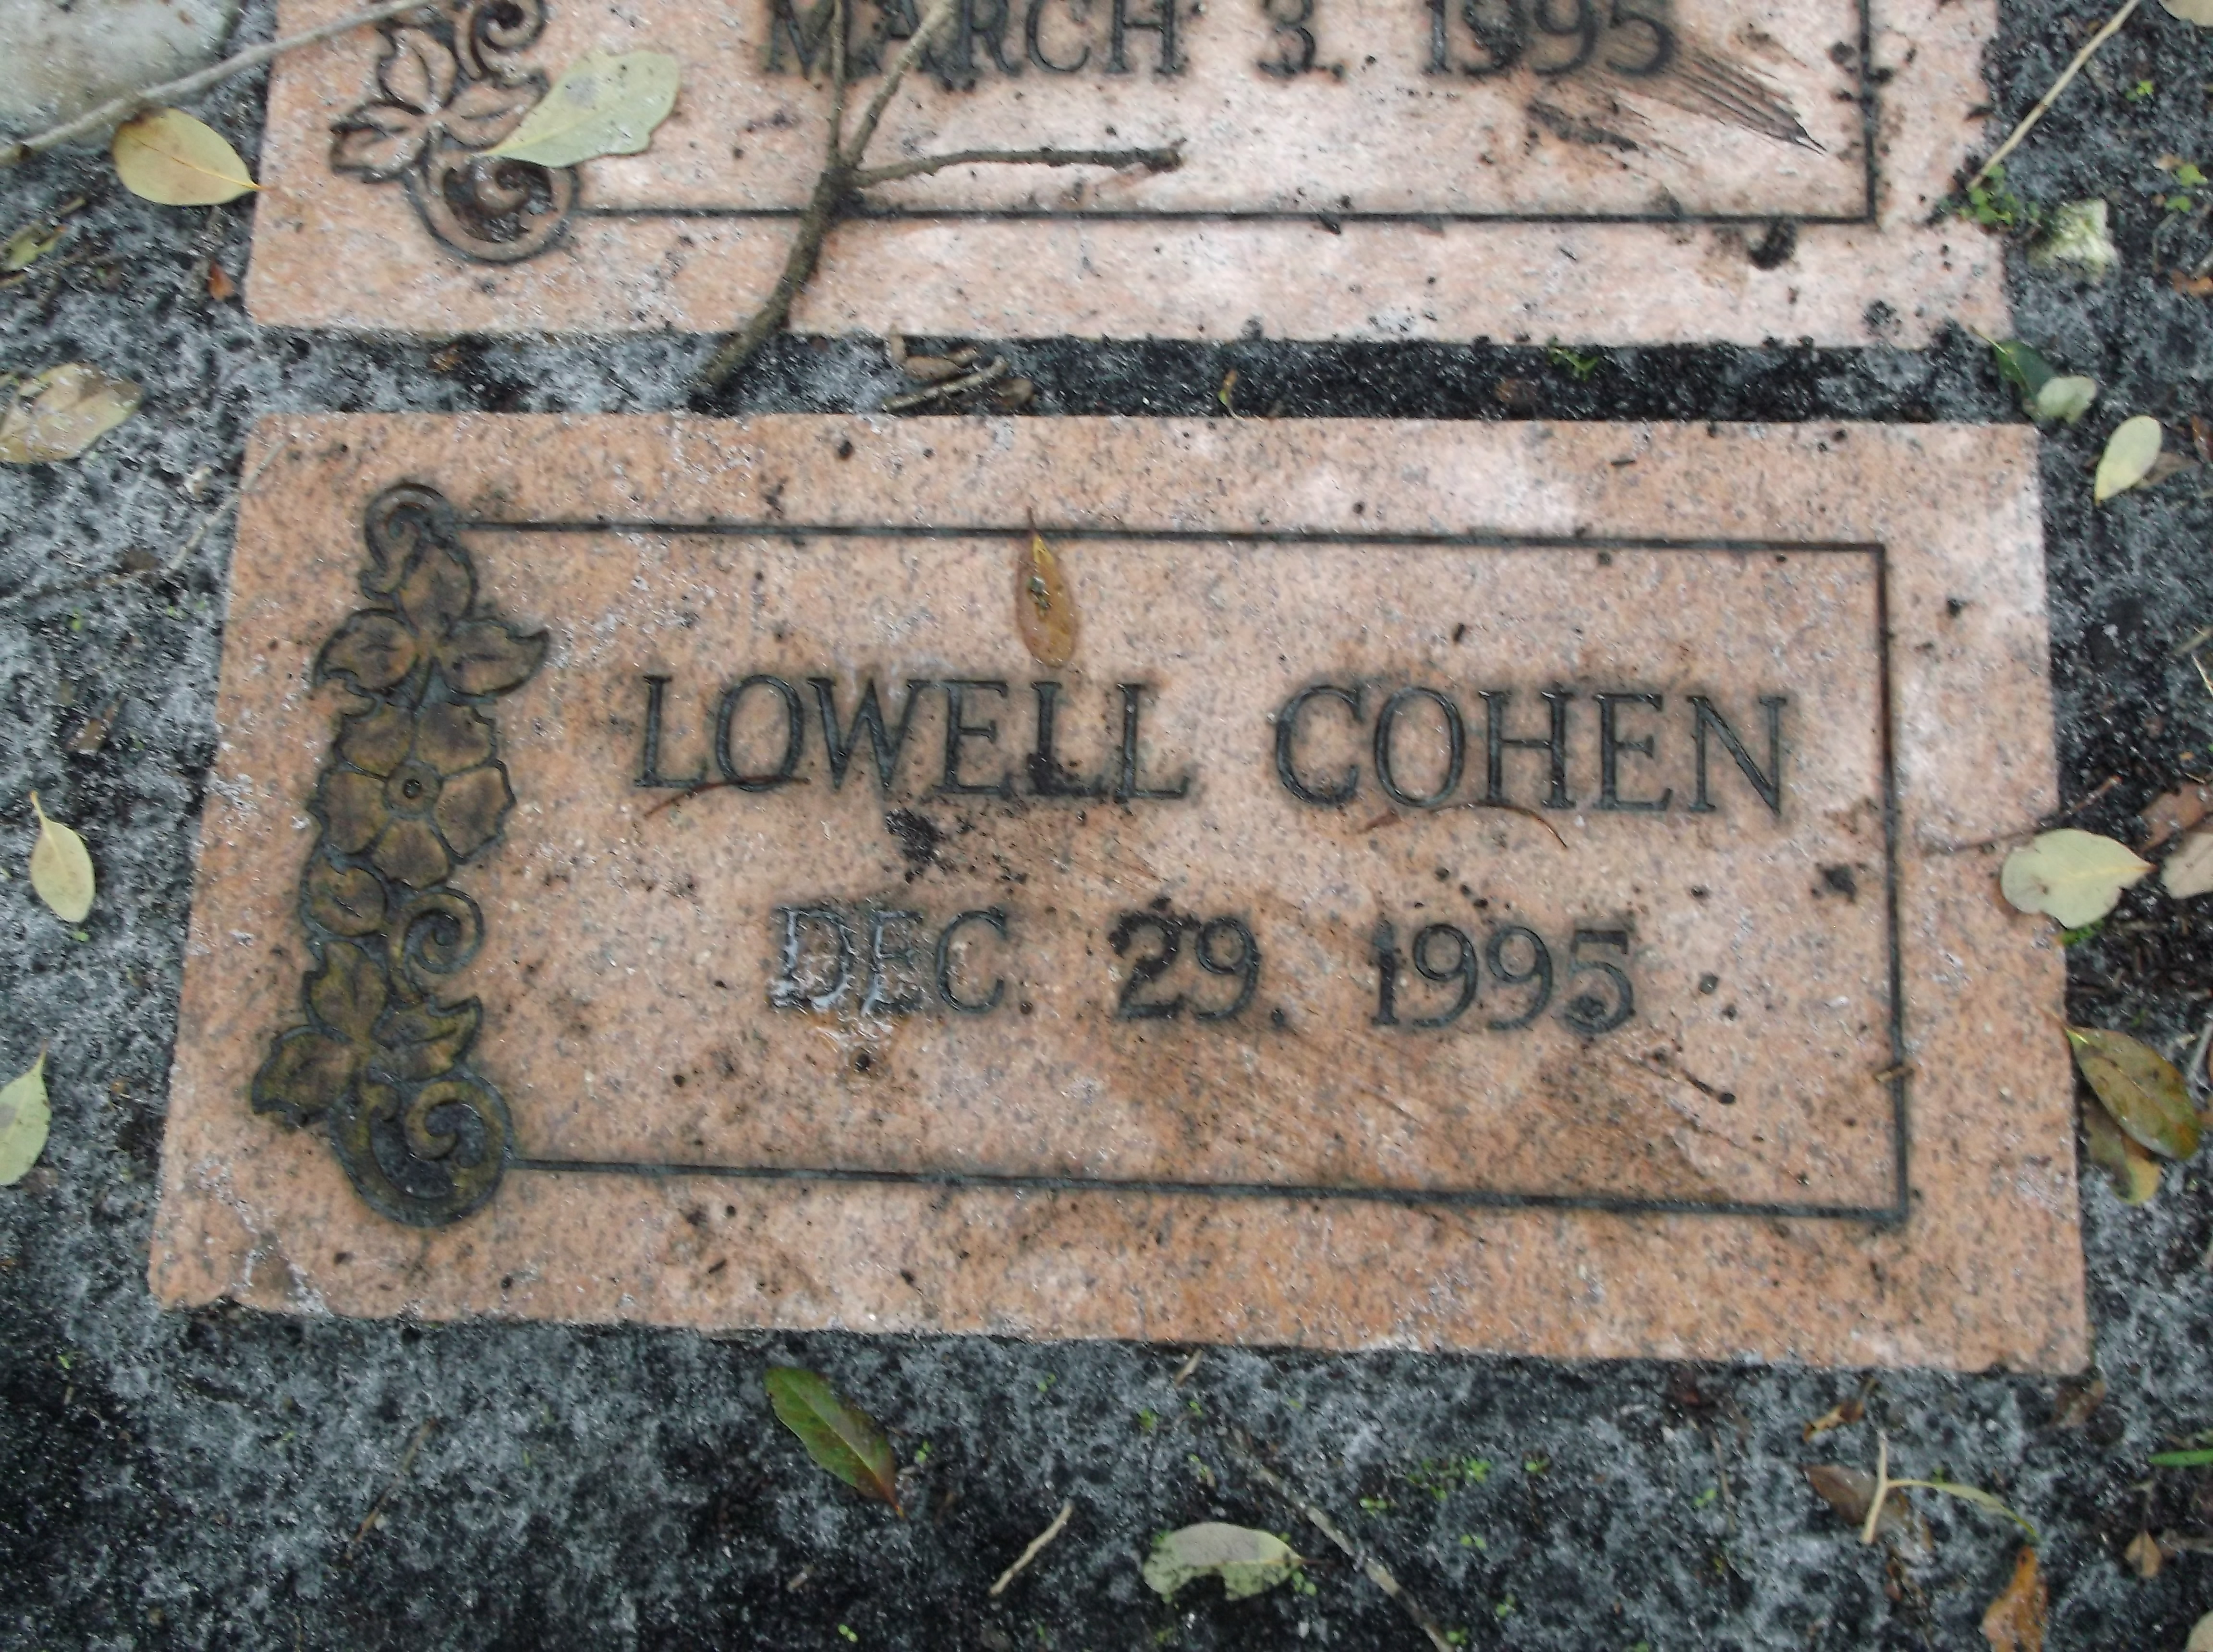 Lowell Cohen